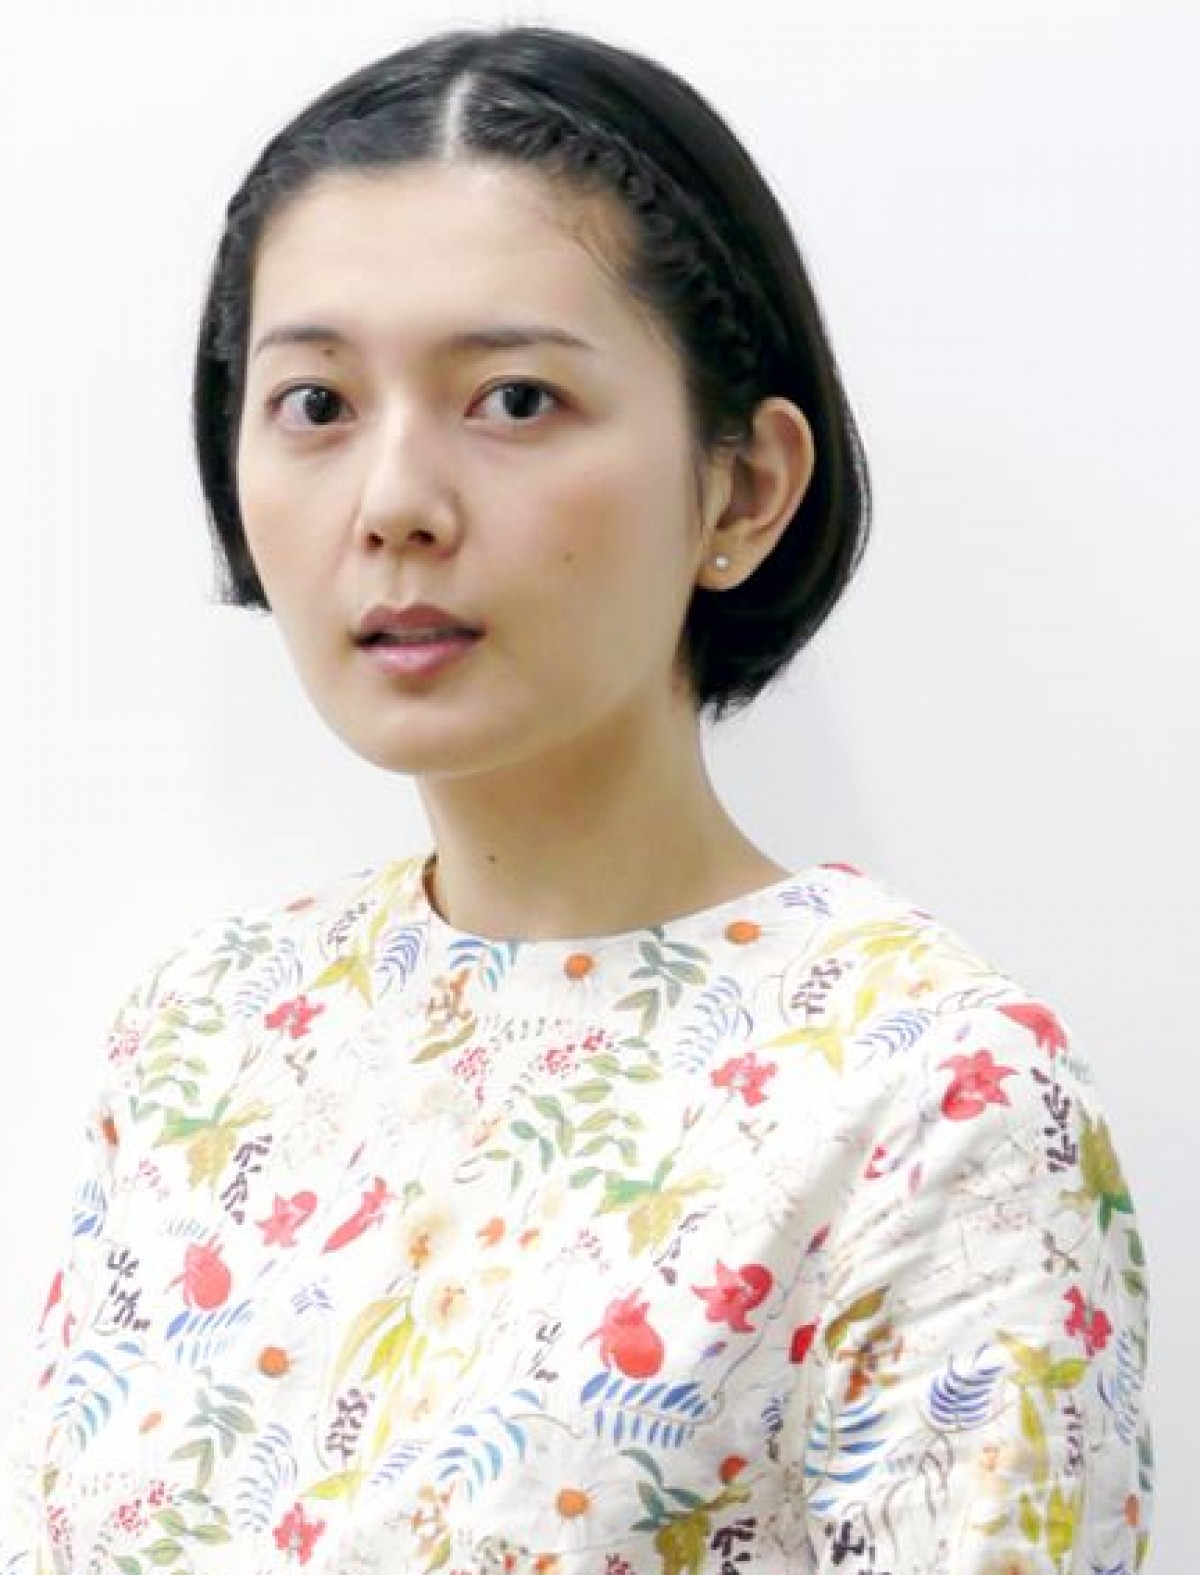 主演映画『グッド・ストライプス』『海のふた』のDVD発売イベントに登場した菊池亜希子